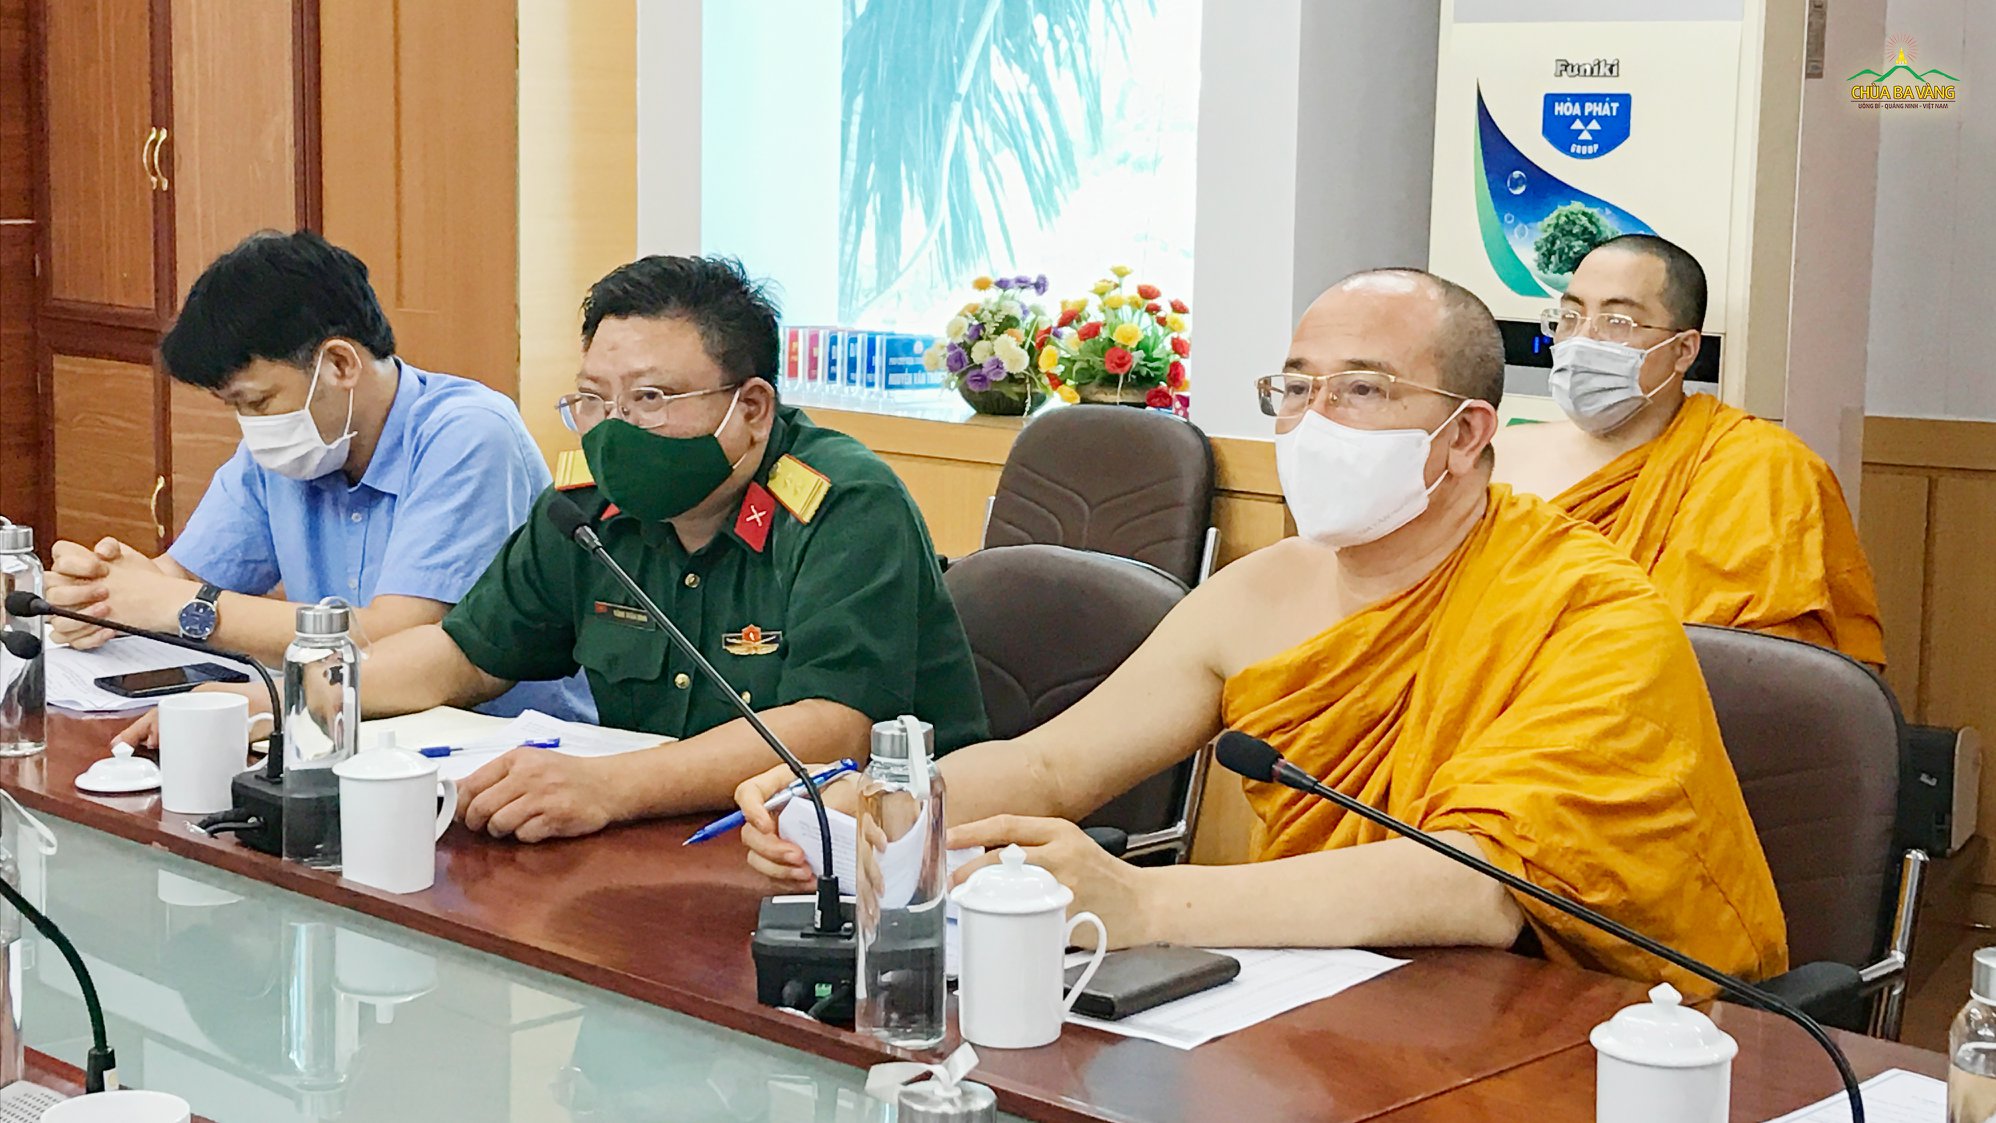 Tham dự cuộc họp, Sư Phụ Thích Trúc Thái Minh hoàn toàn nhất trí và ủng hộ cao với đề xuất lựa chọn chùa Ba Vàng là một trong những điểm cách ly tập trung nếu dịch bùng phát tại thành phố Uông Bí